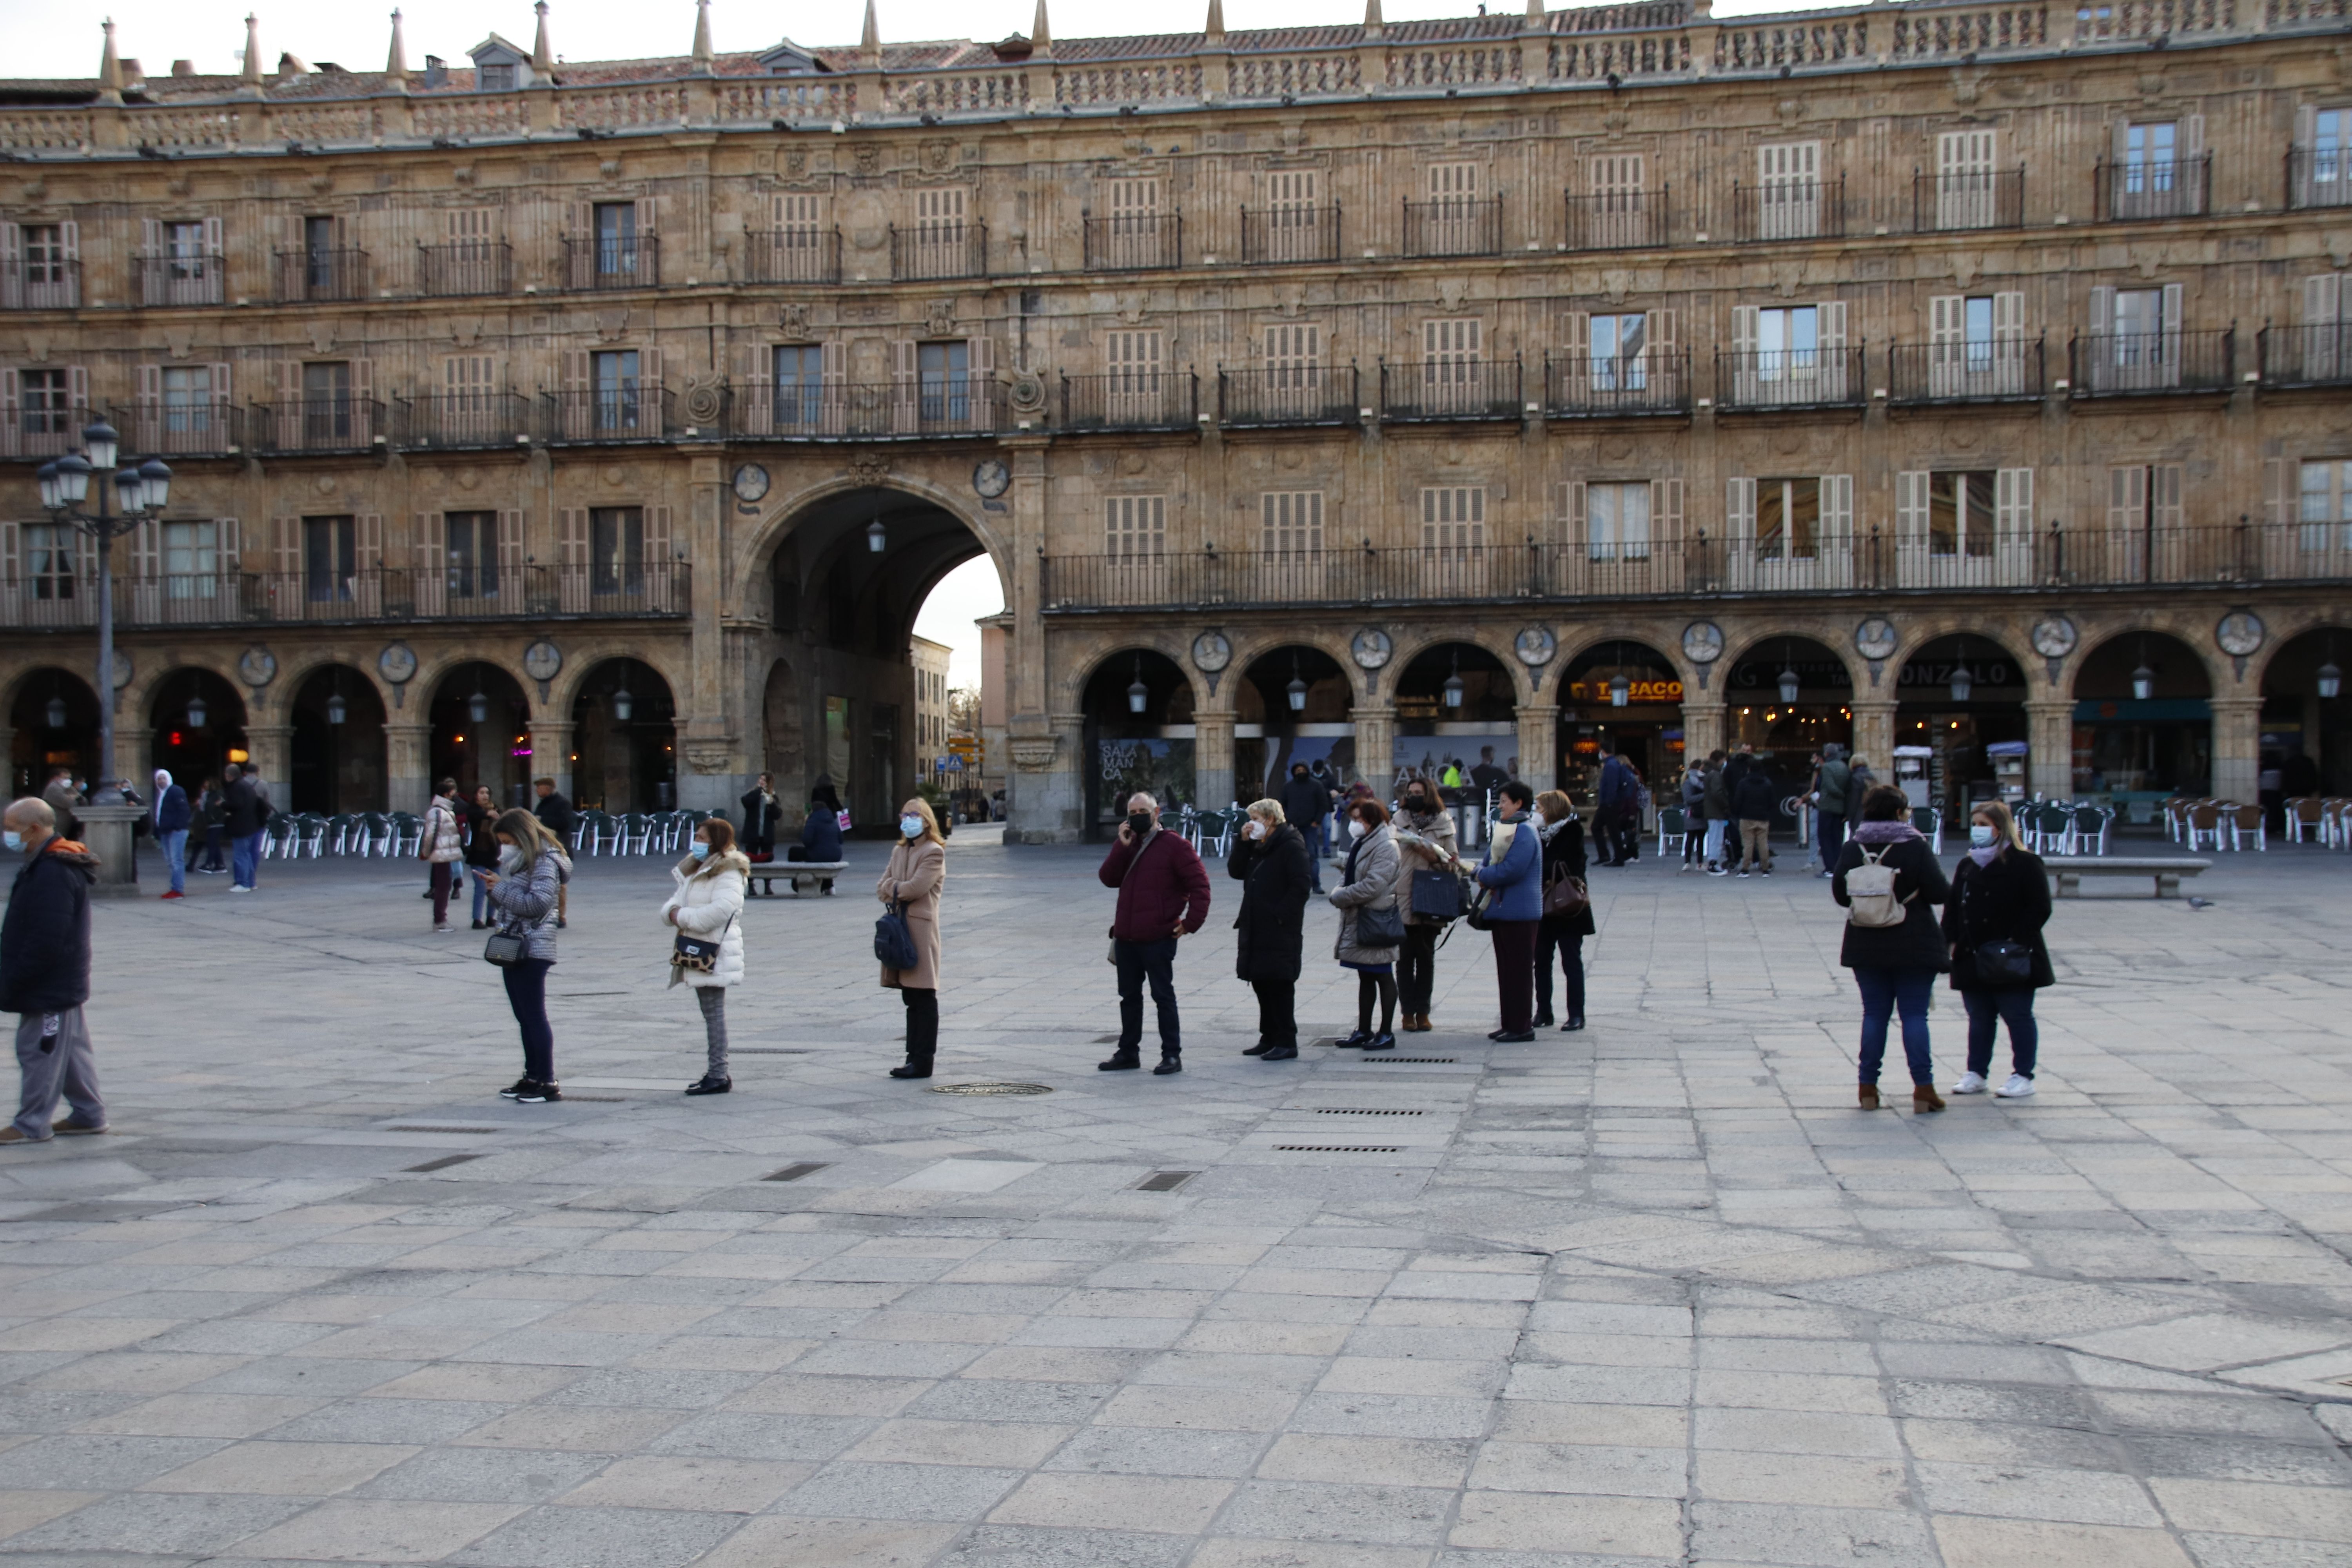 Colas infinitas para comprar la lotería de navidad de la Universidad de Salamanca 